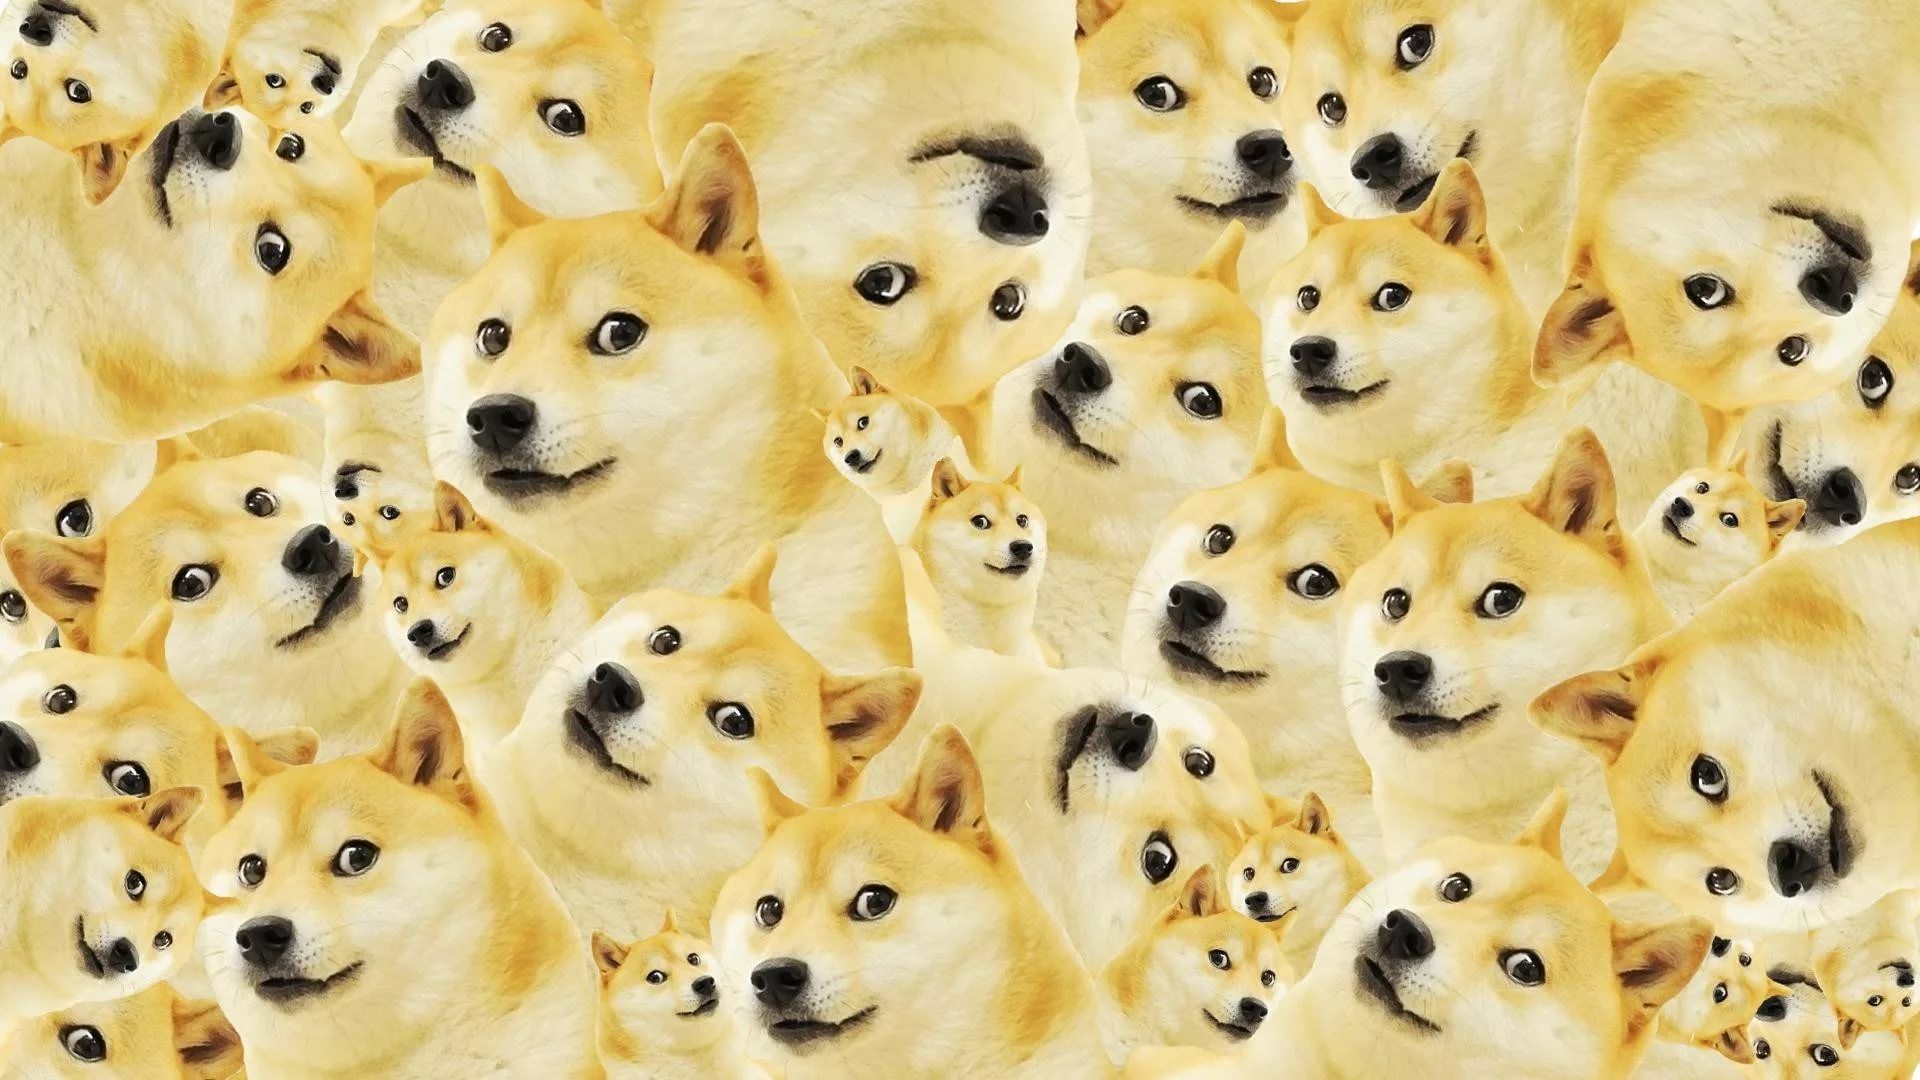 doge meme wallpaper